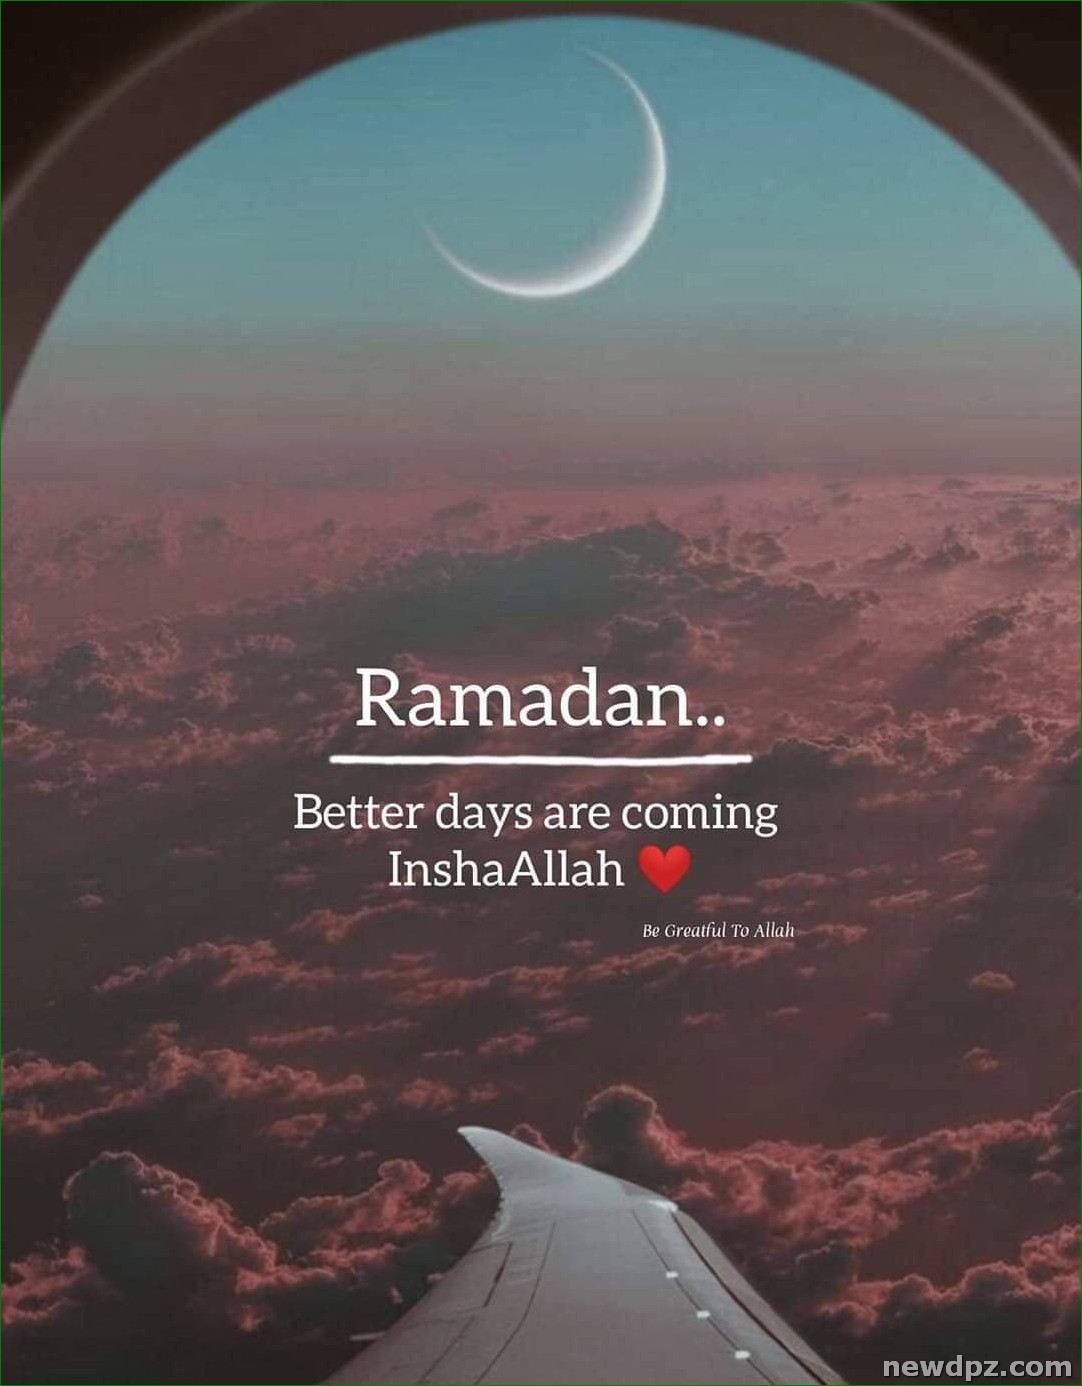 Ramadan Mubarak DP